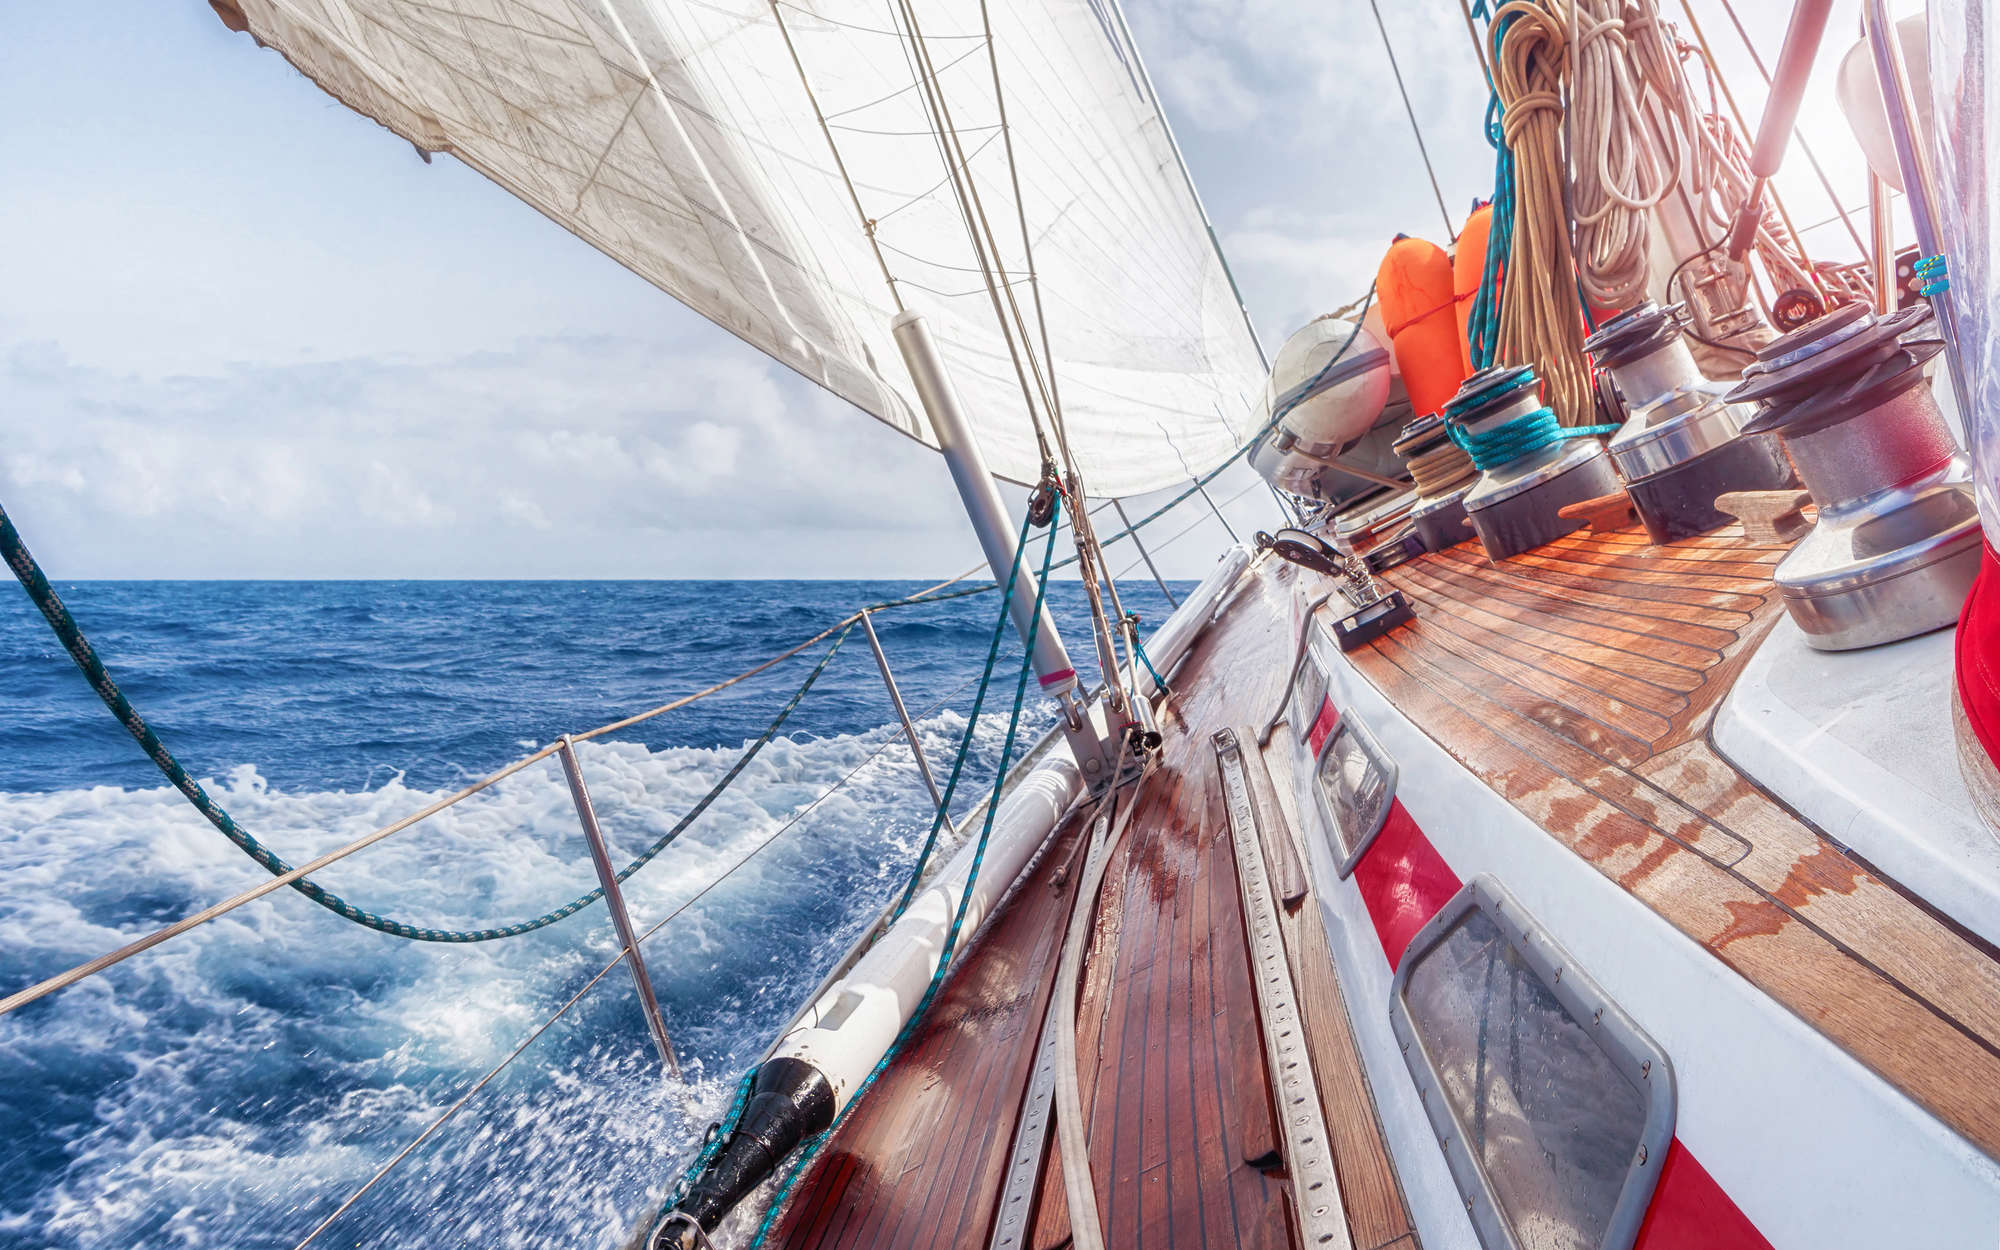             Digital behang Zeilboot op zee - Premium glad fleece
        